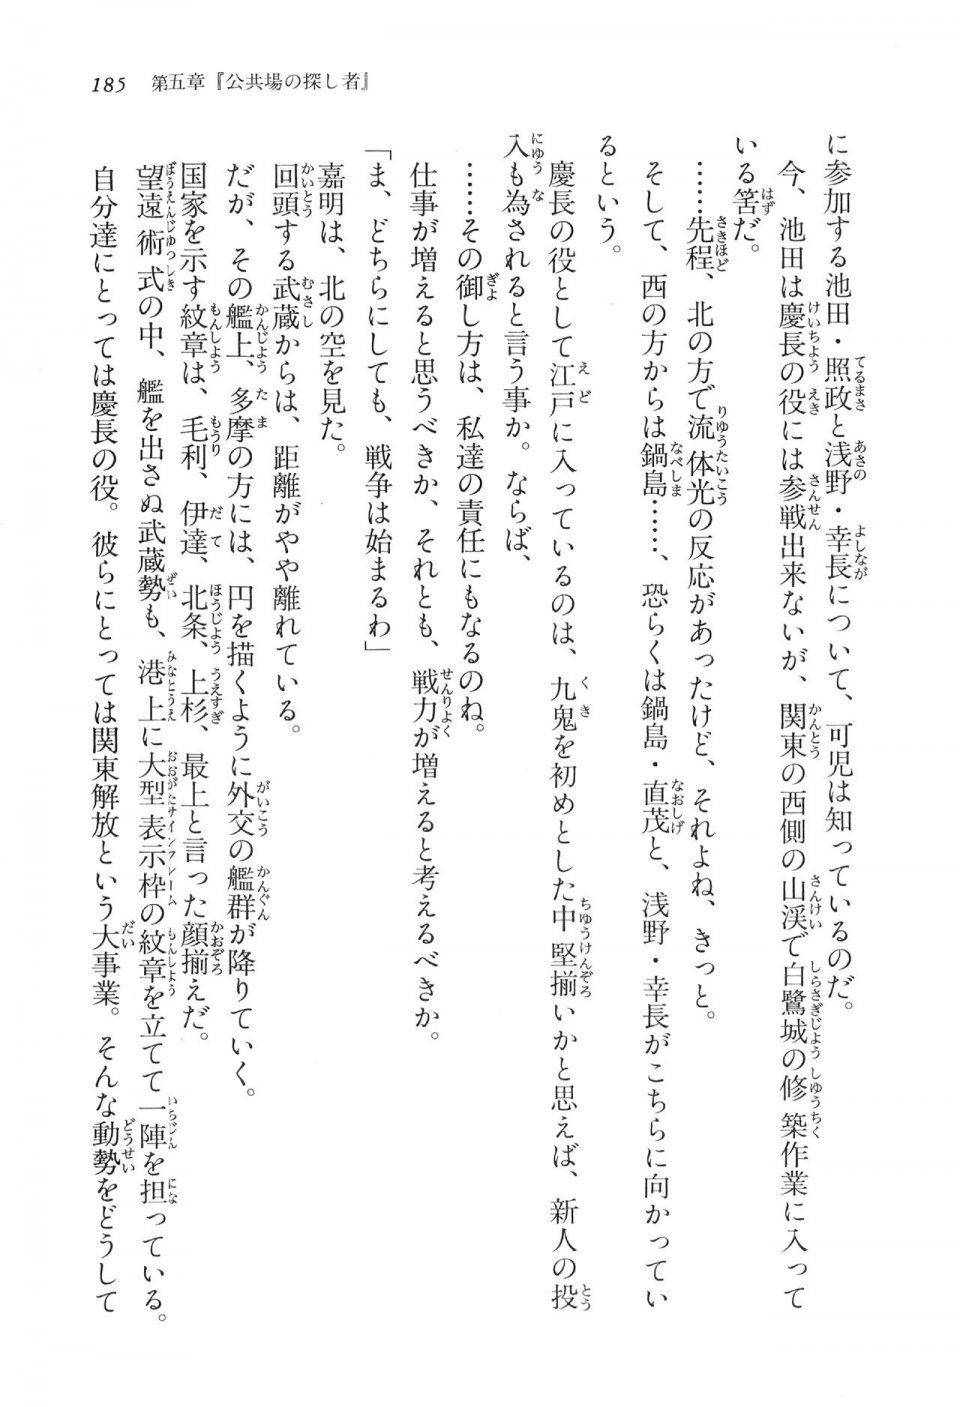 Kyoukai Senjou no Horizon LN Vol 16(7A) - Photo #185